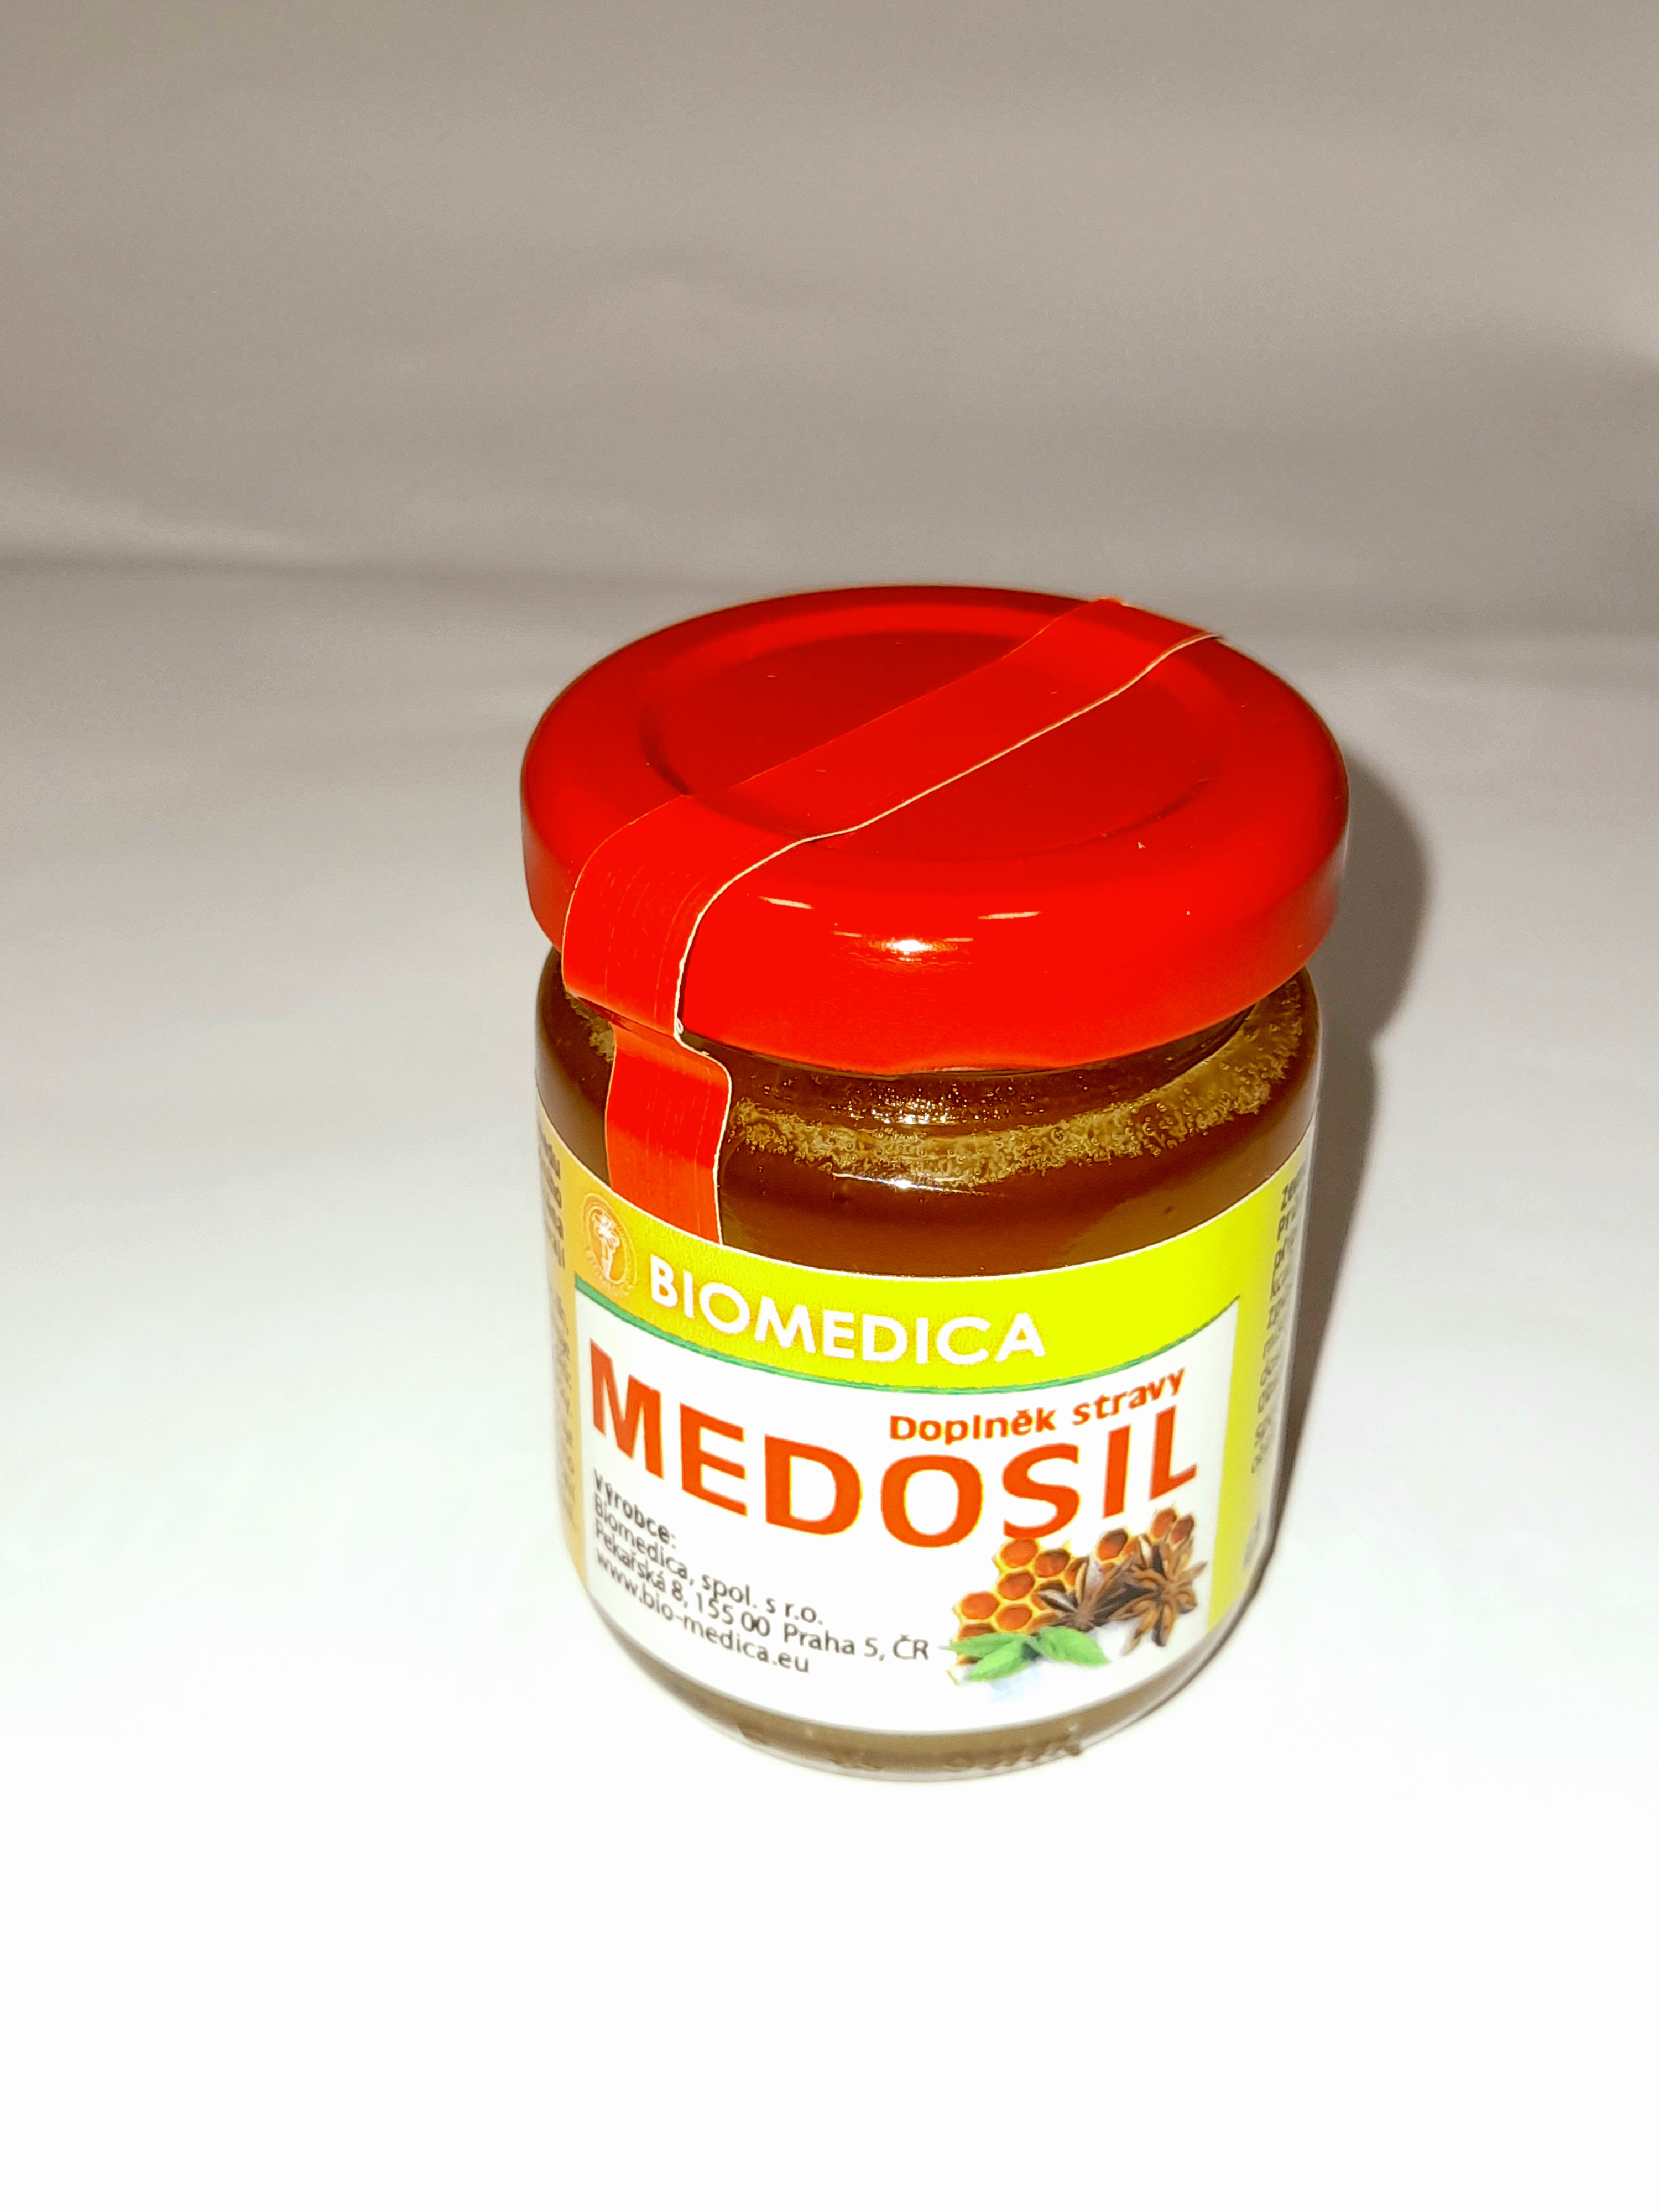 Medosil - doplněk stravy 65 g